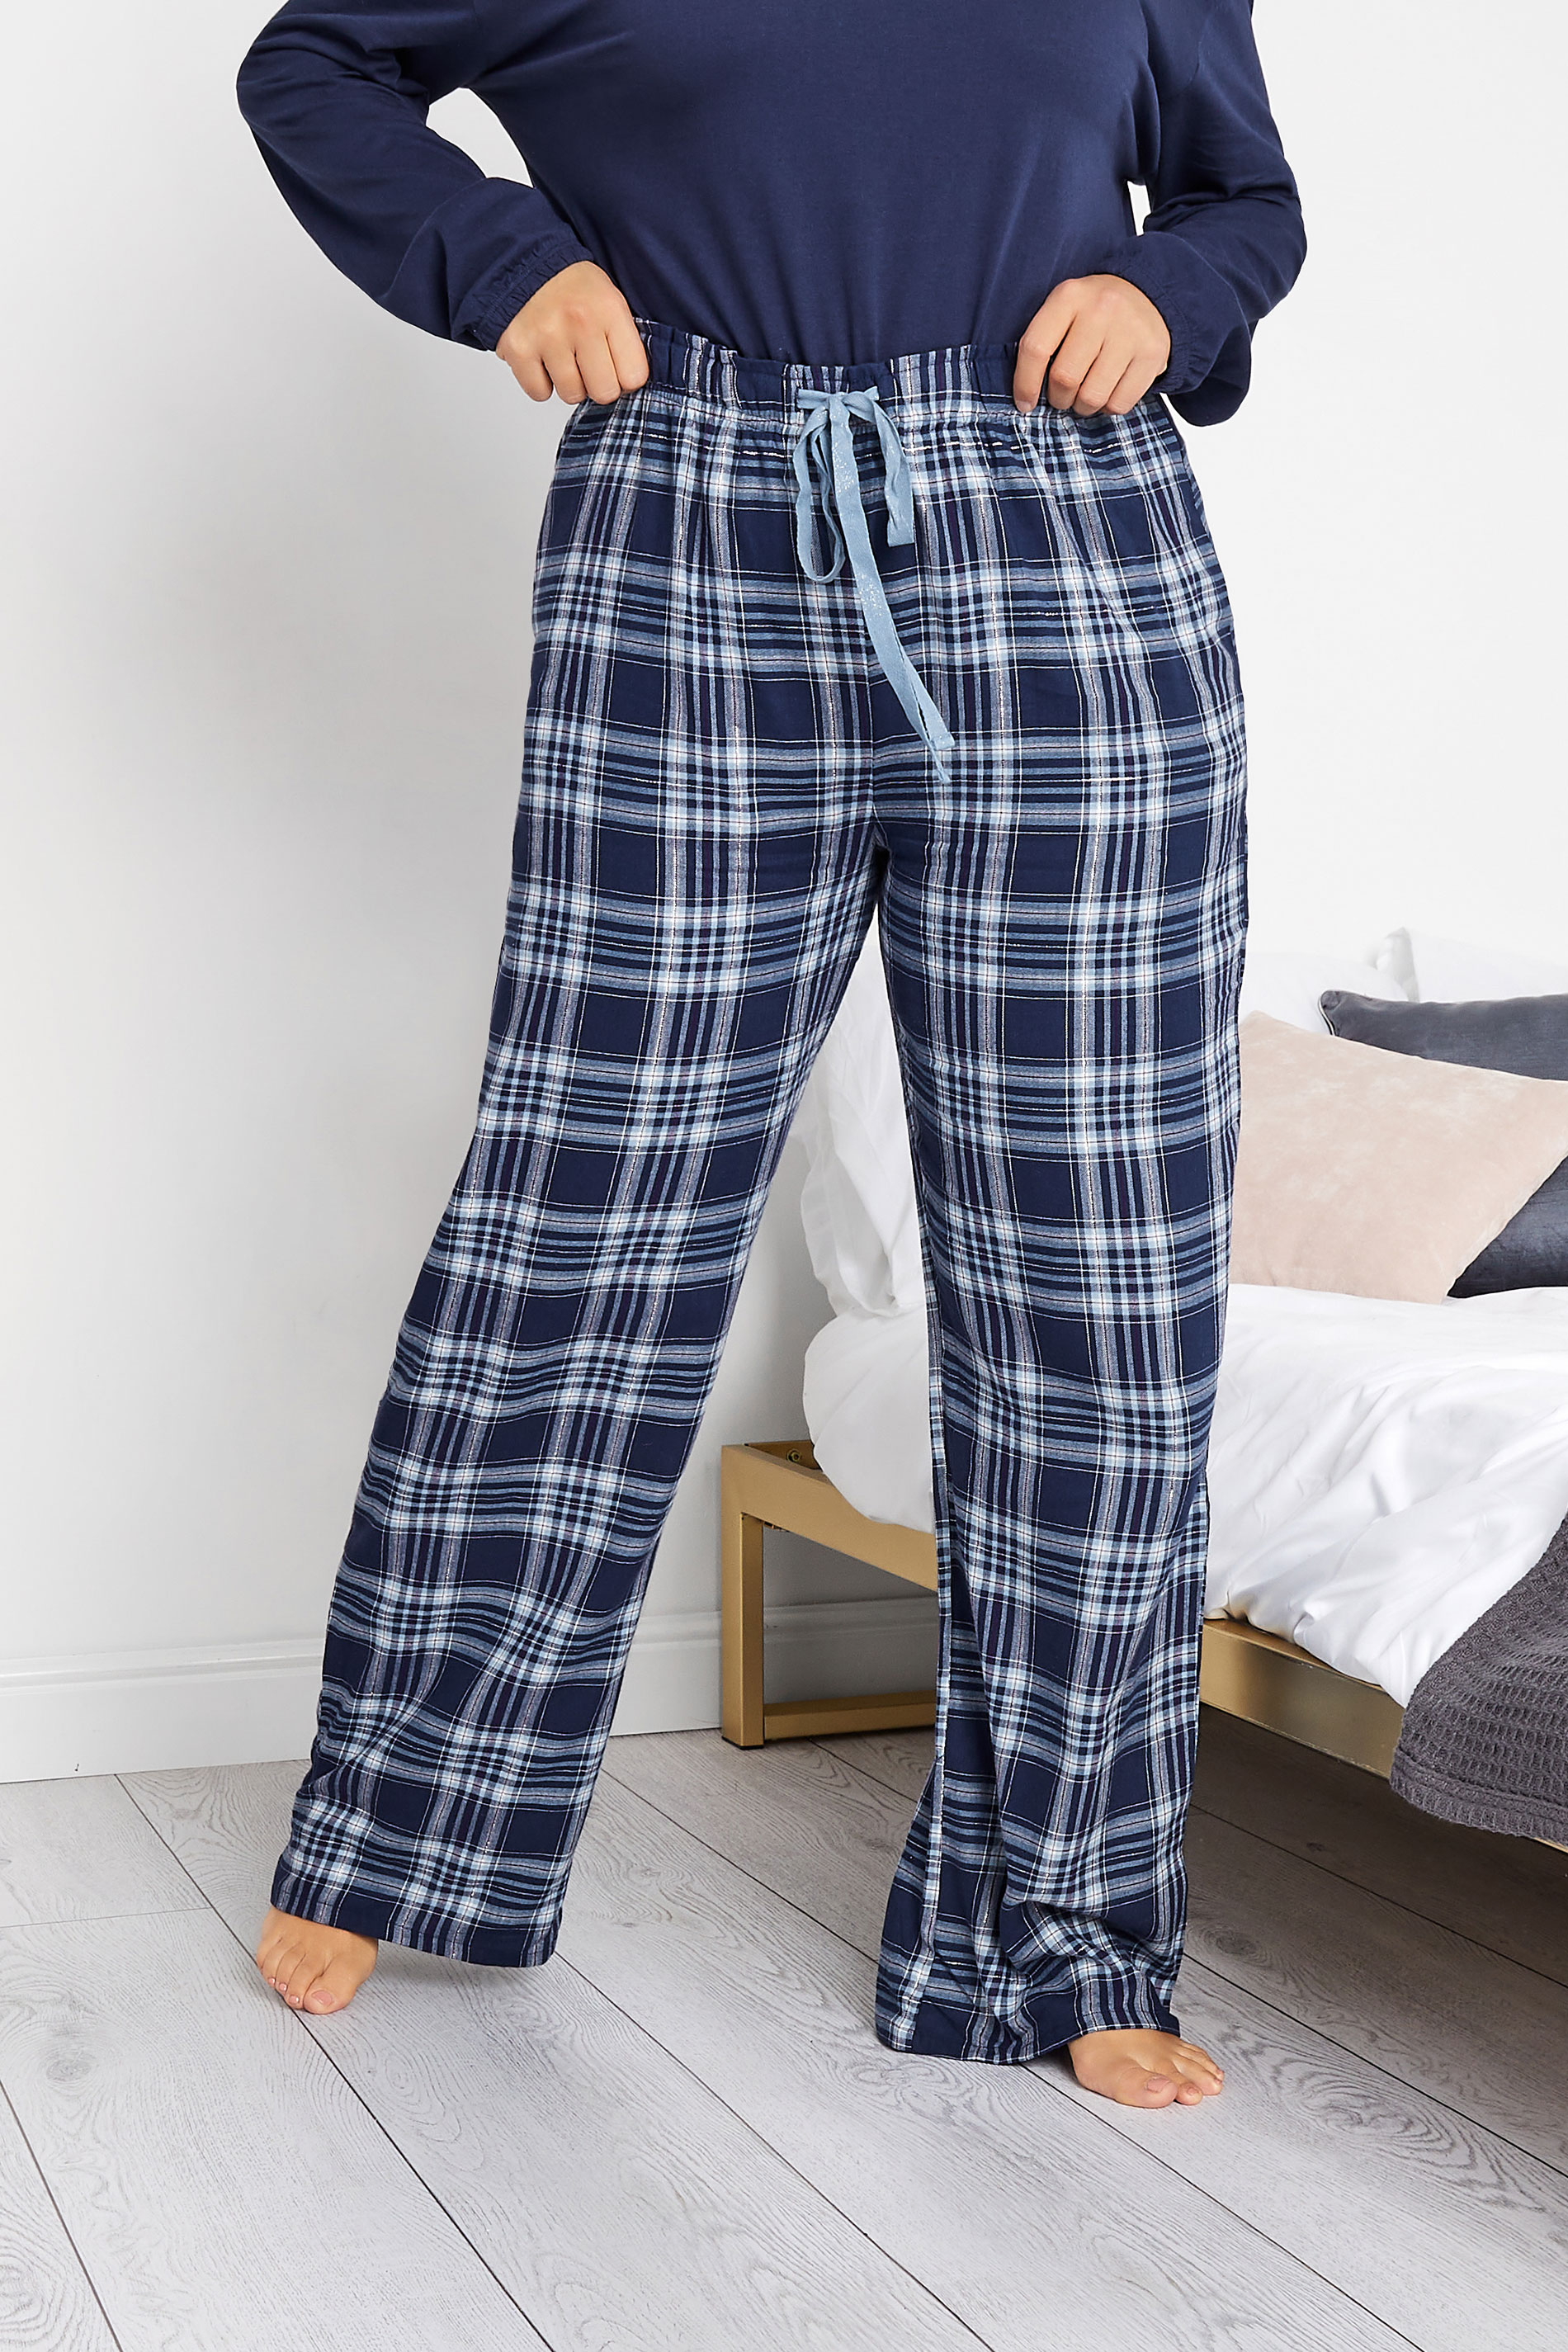 LTS Tall Women's Navy Blue Woven Check Pyjama Bottoms | Long Tall Sally 1